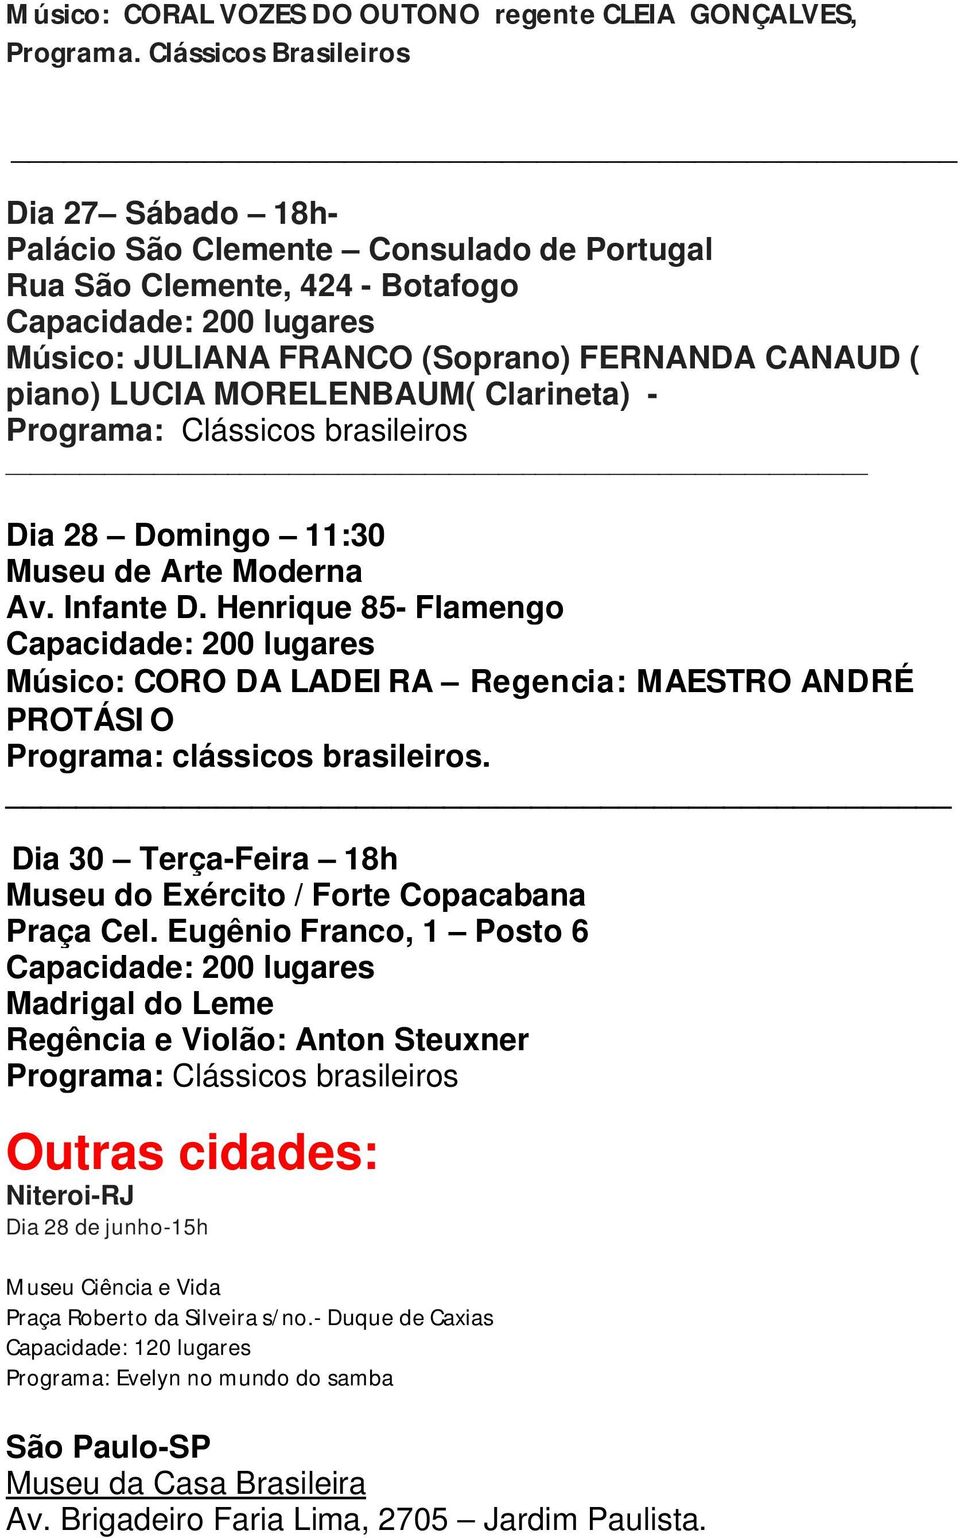 Clarineta) - Dia 28 Domingo 11:30 Museu de Arte Moderna Av. Infante D. Henrique 85- Flamengo Músico: CORO DA LADEIRA Regencia: MAESTRO ANDRÉ PROTÁSIO Programa: clássicos brasileiros.